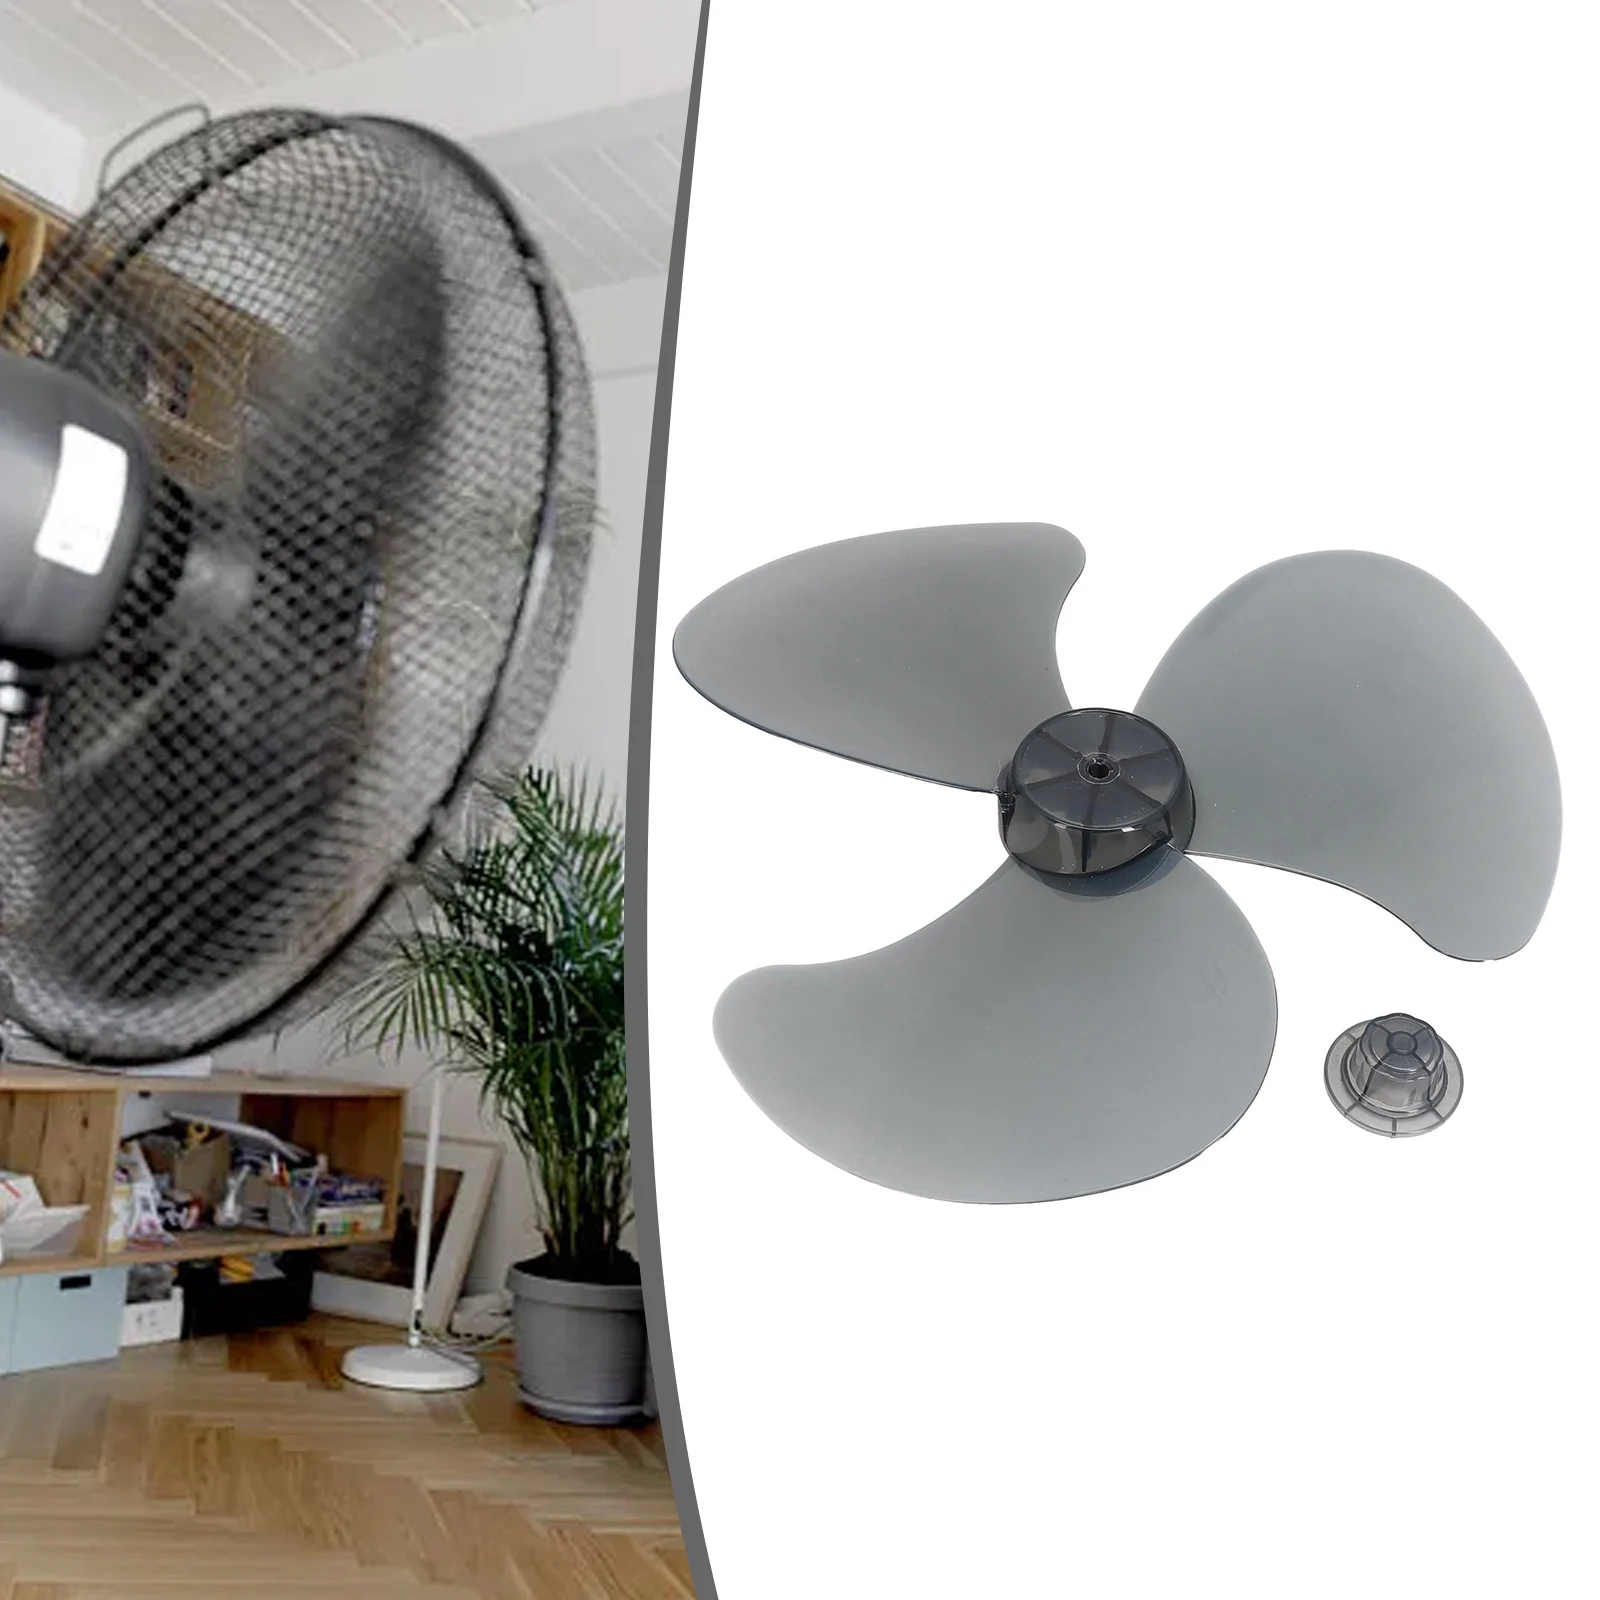 

Пластиковый вентилятор с 3 листьями, 16 дюймов, прозрачный белый черный, аксессуары для электрического вентилятора, подставка для вентилятора, замена лопасти вентилятора